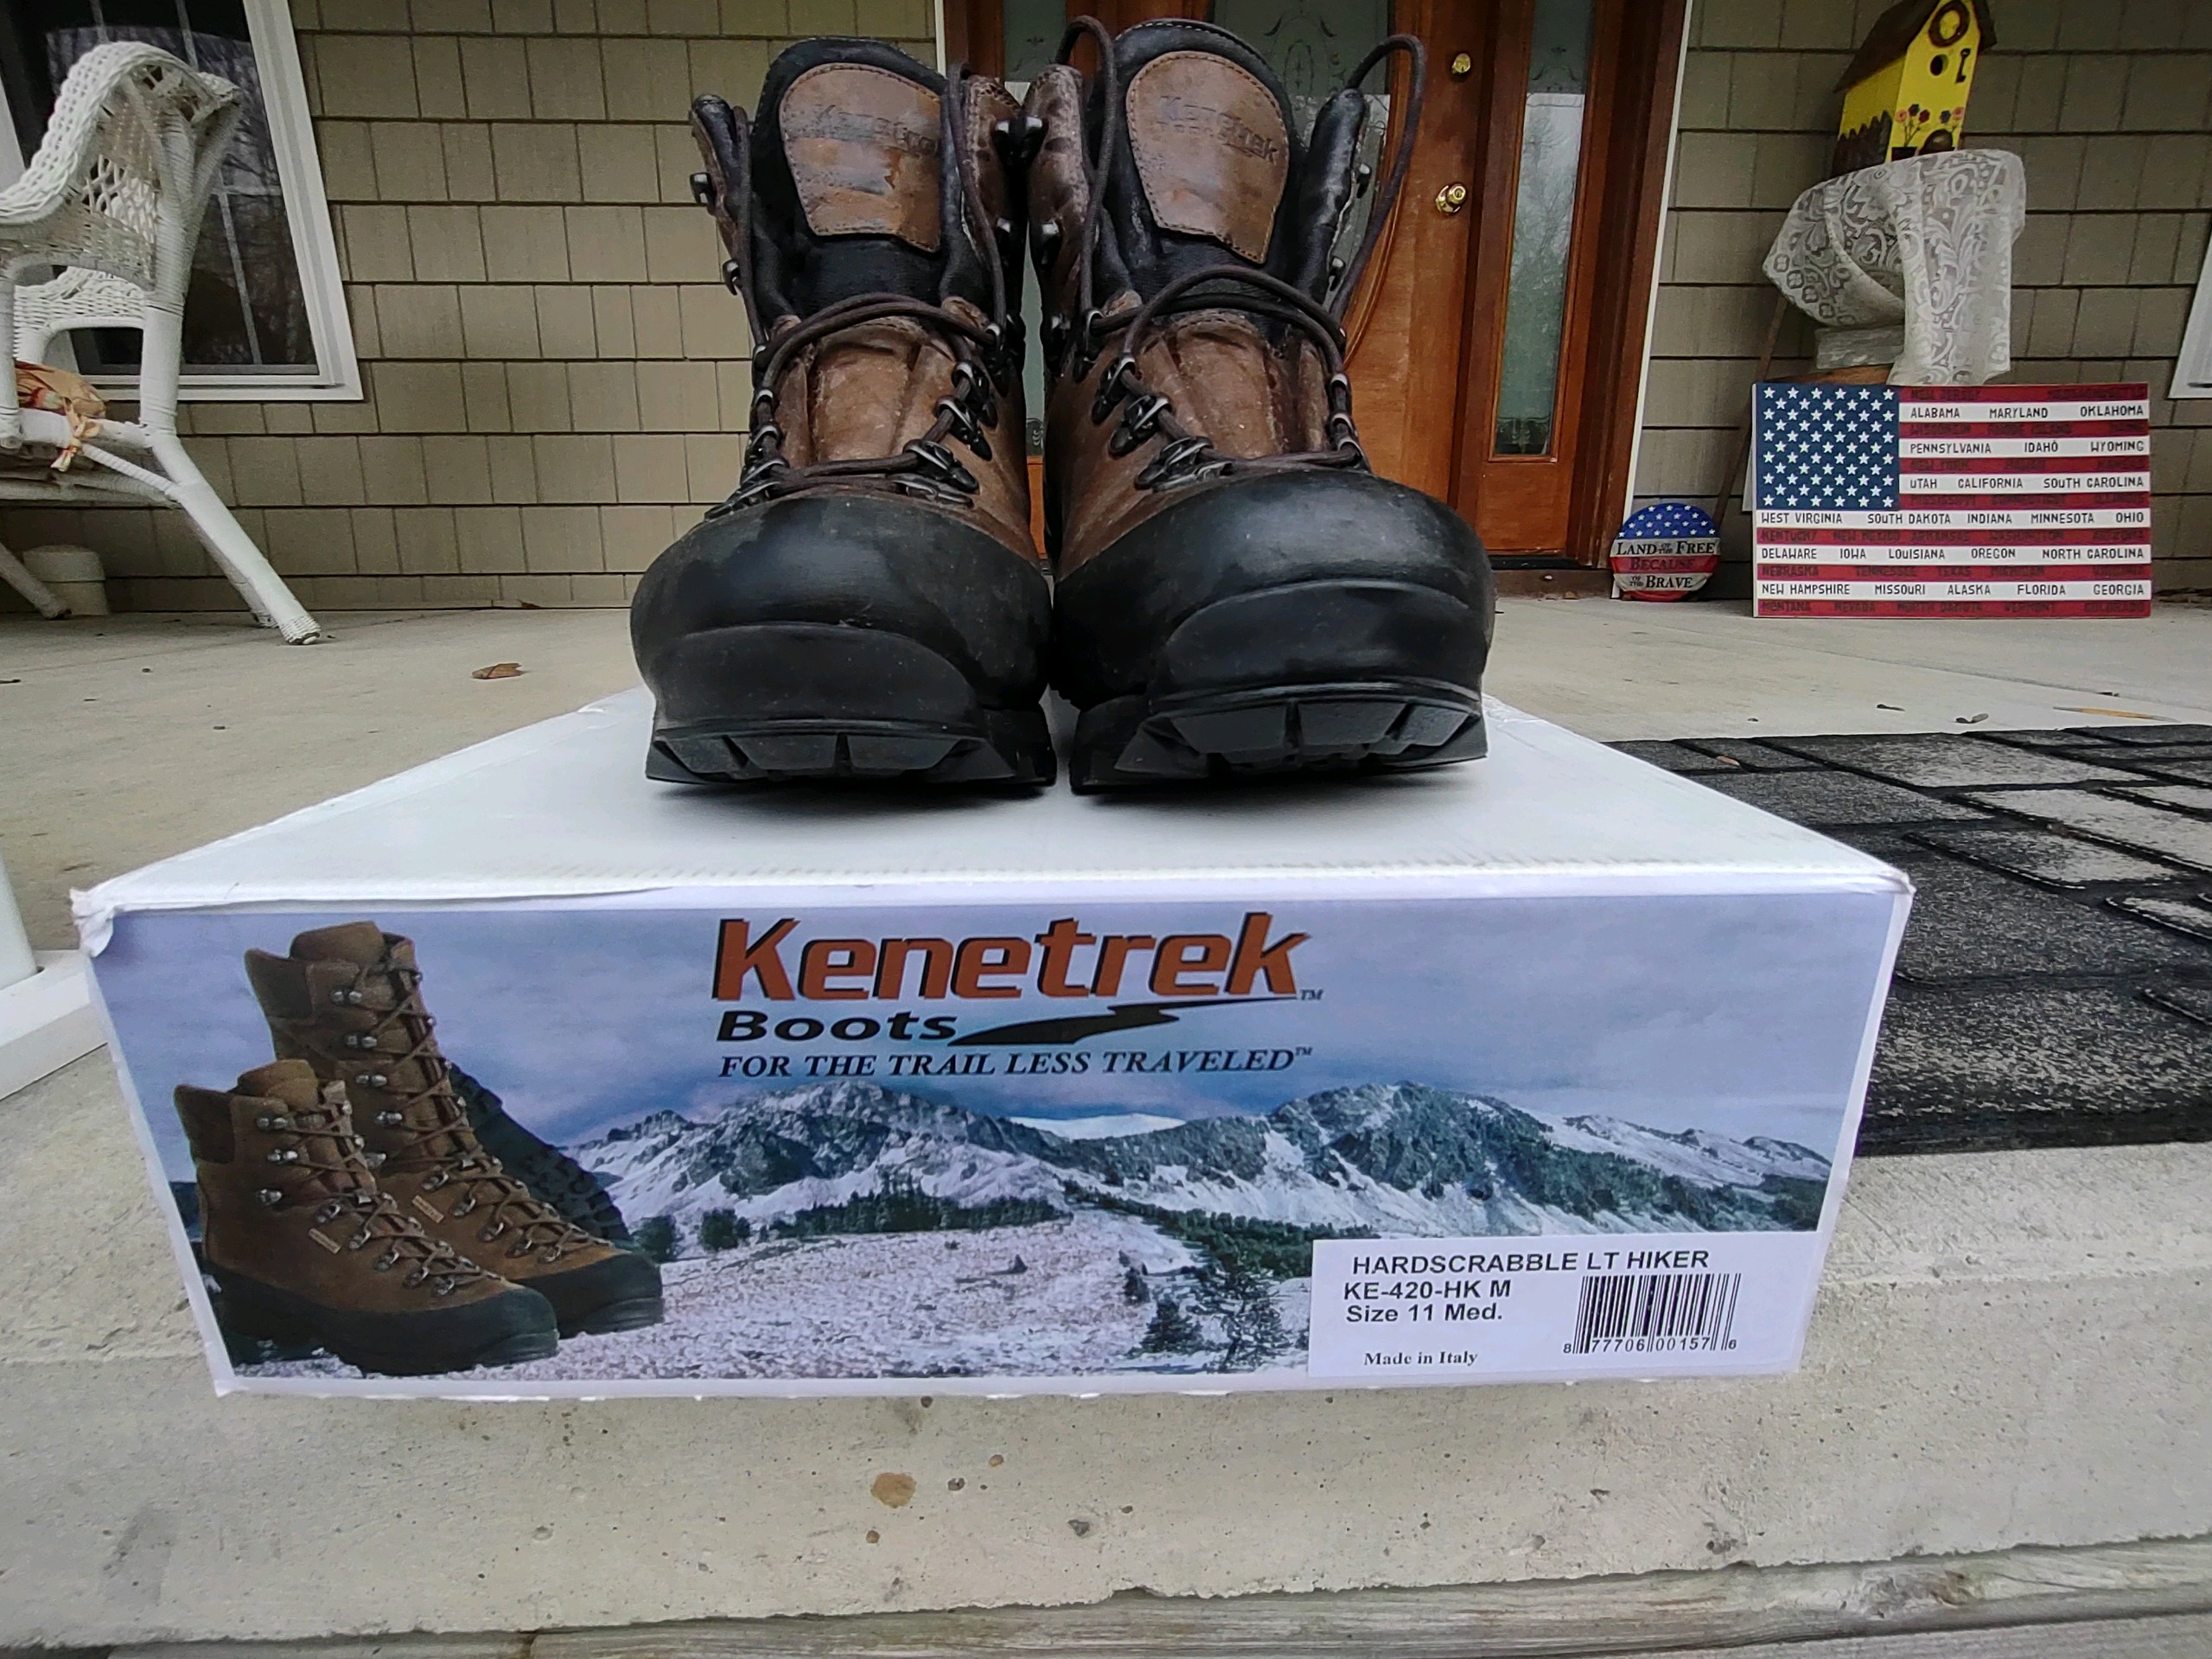 Kennetrek Boots.jpg